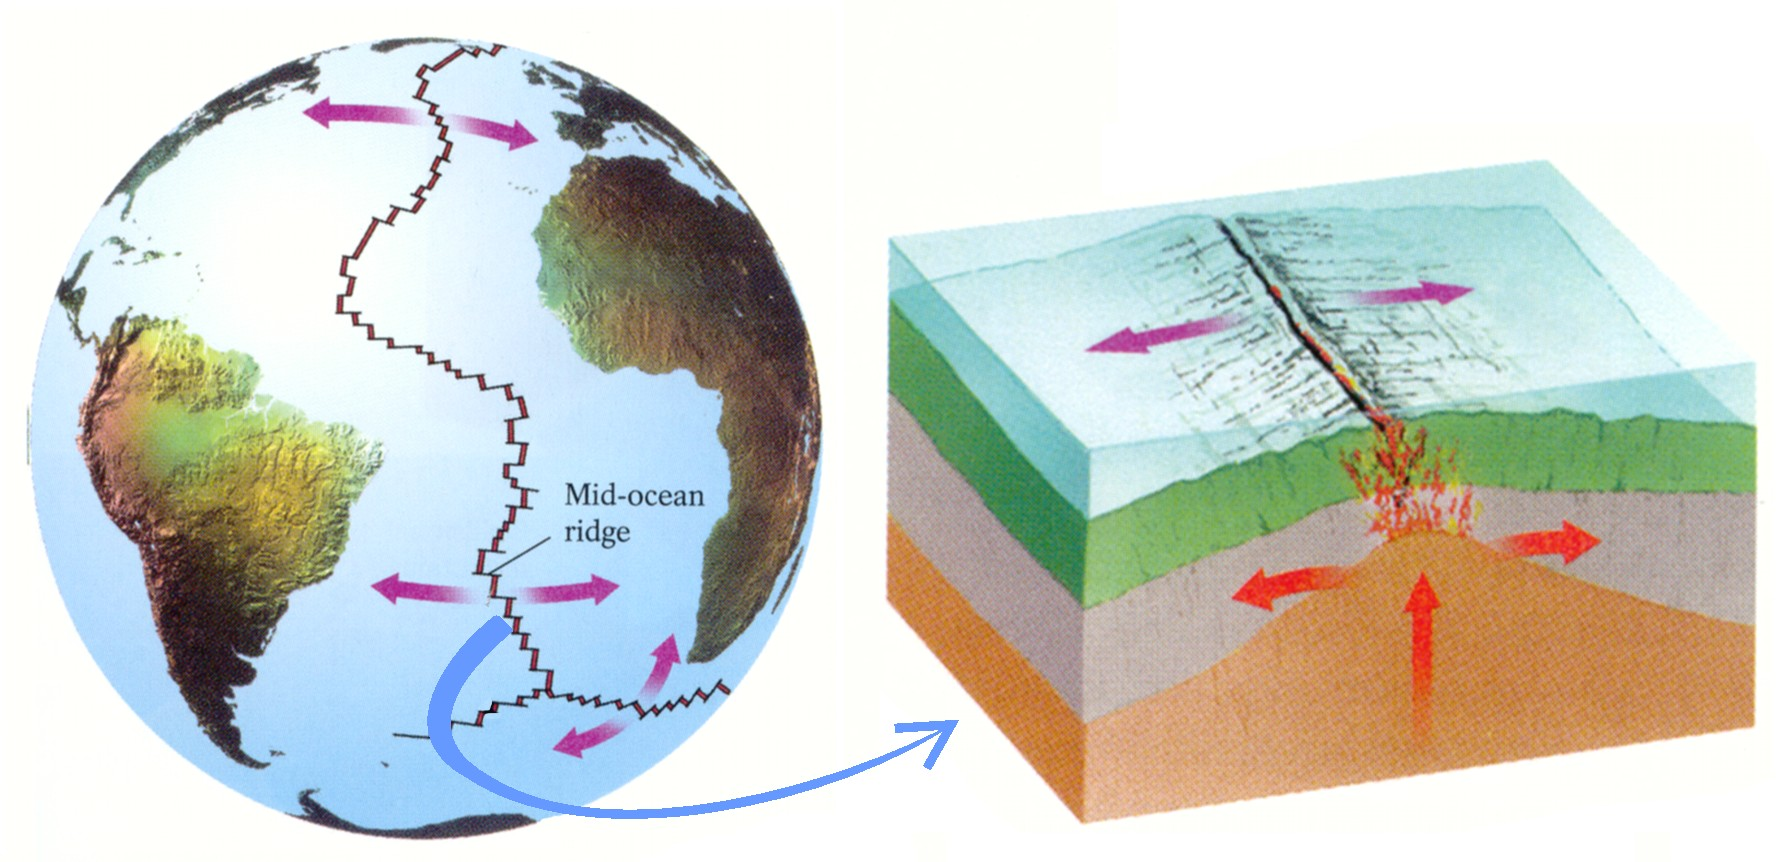 ωκεάνια περιοχή με τη γεωλογική έννοια. Αντίθετα, η κρηπίδα ανήκει στην ήπειρο από την οποία δύσκολα αποχωρίζεται.